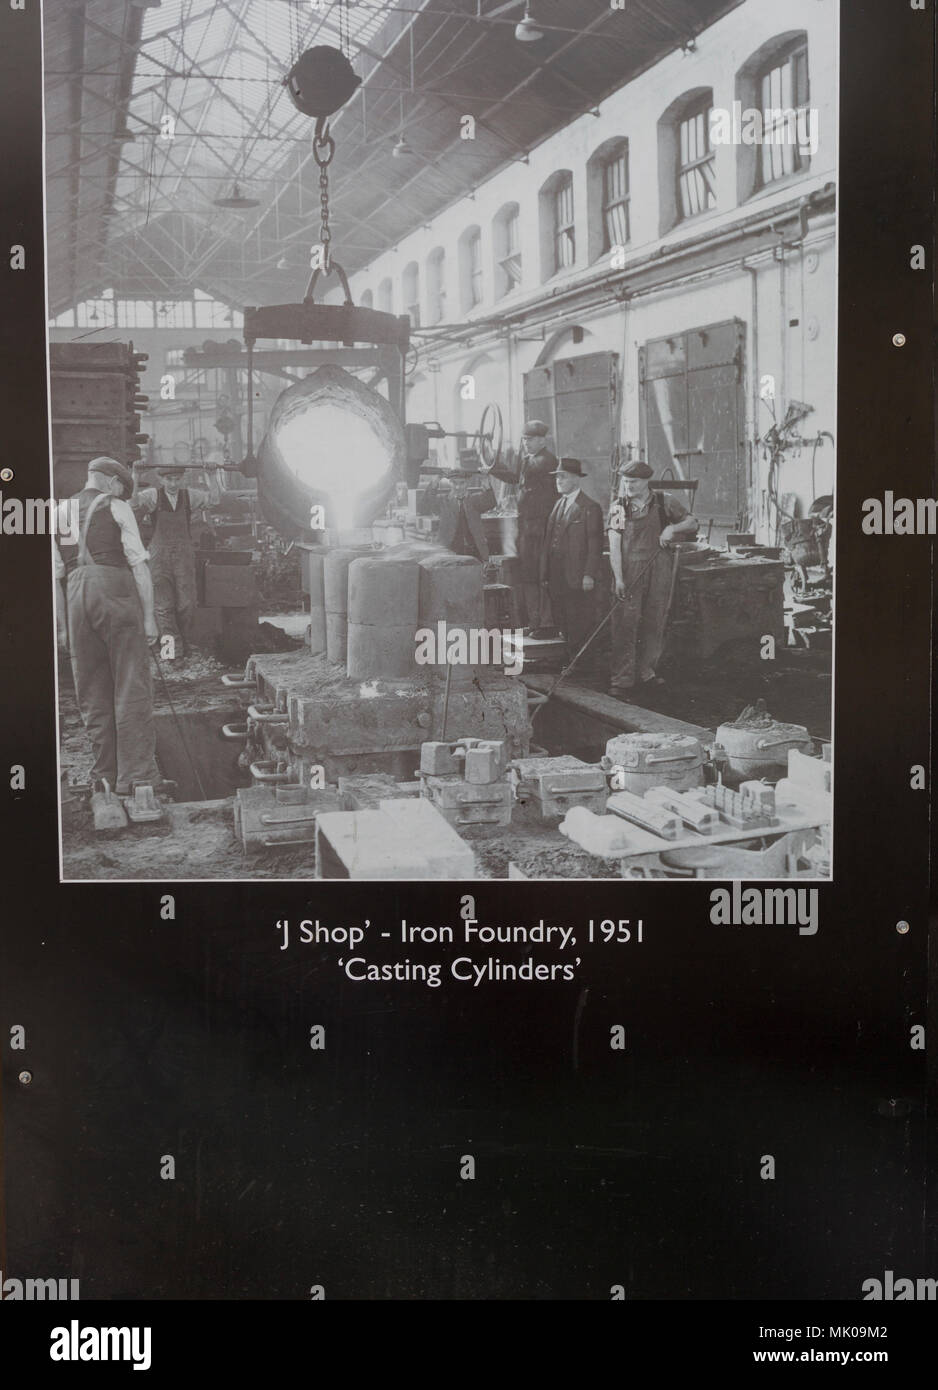 Public display del vecchio e storico immagini sulle opere di GWR, Swindon, Wiltshire, Inghilterra, Regno Unito - J shop fonderia di ferro 1951 cilindri di colata Foto Stock